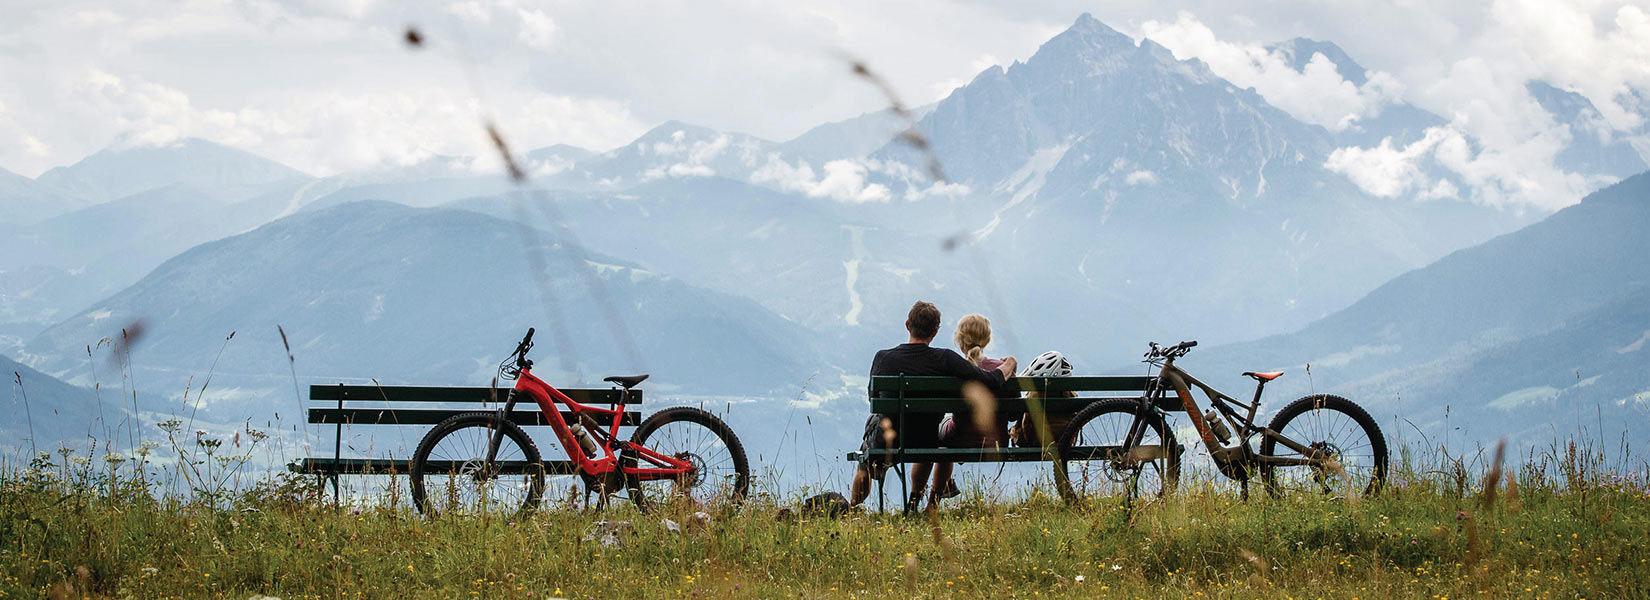 4_E-Bike-Tour-Nordkette-Innsbruck-Tourismus-Erwin-Haiden_